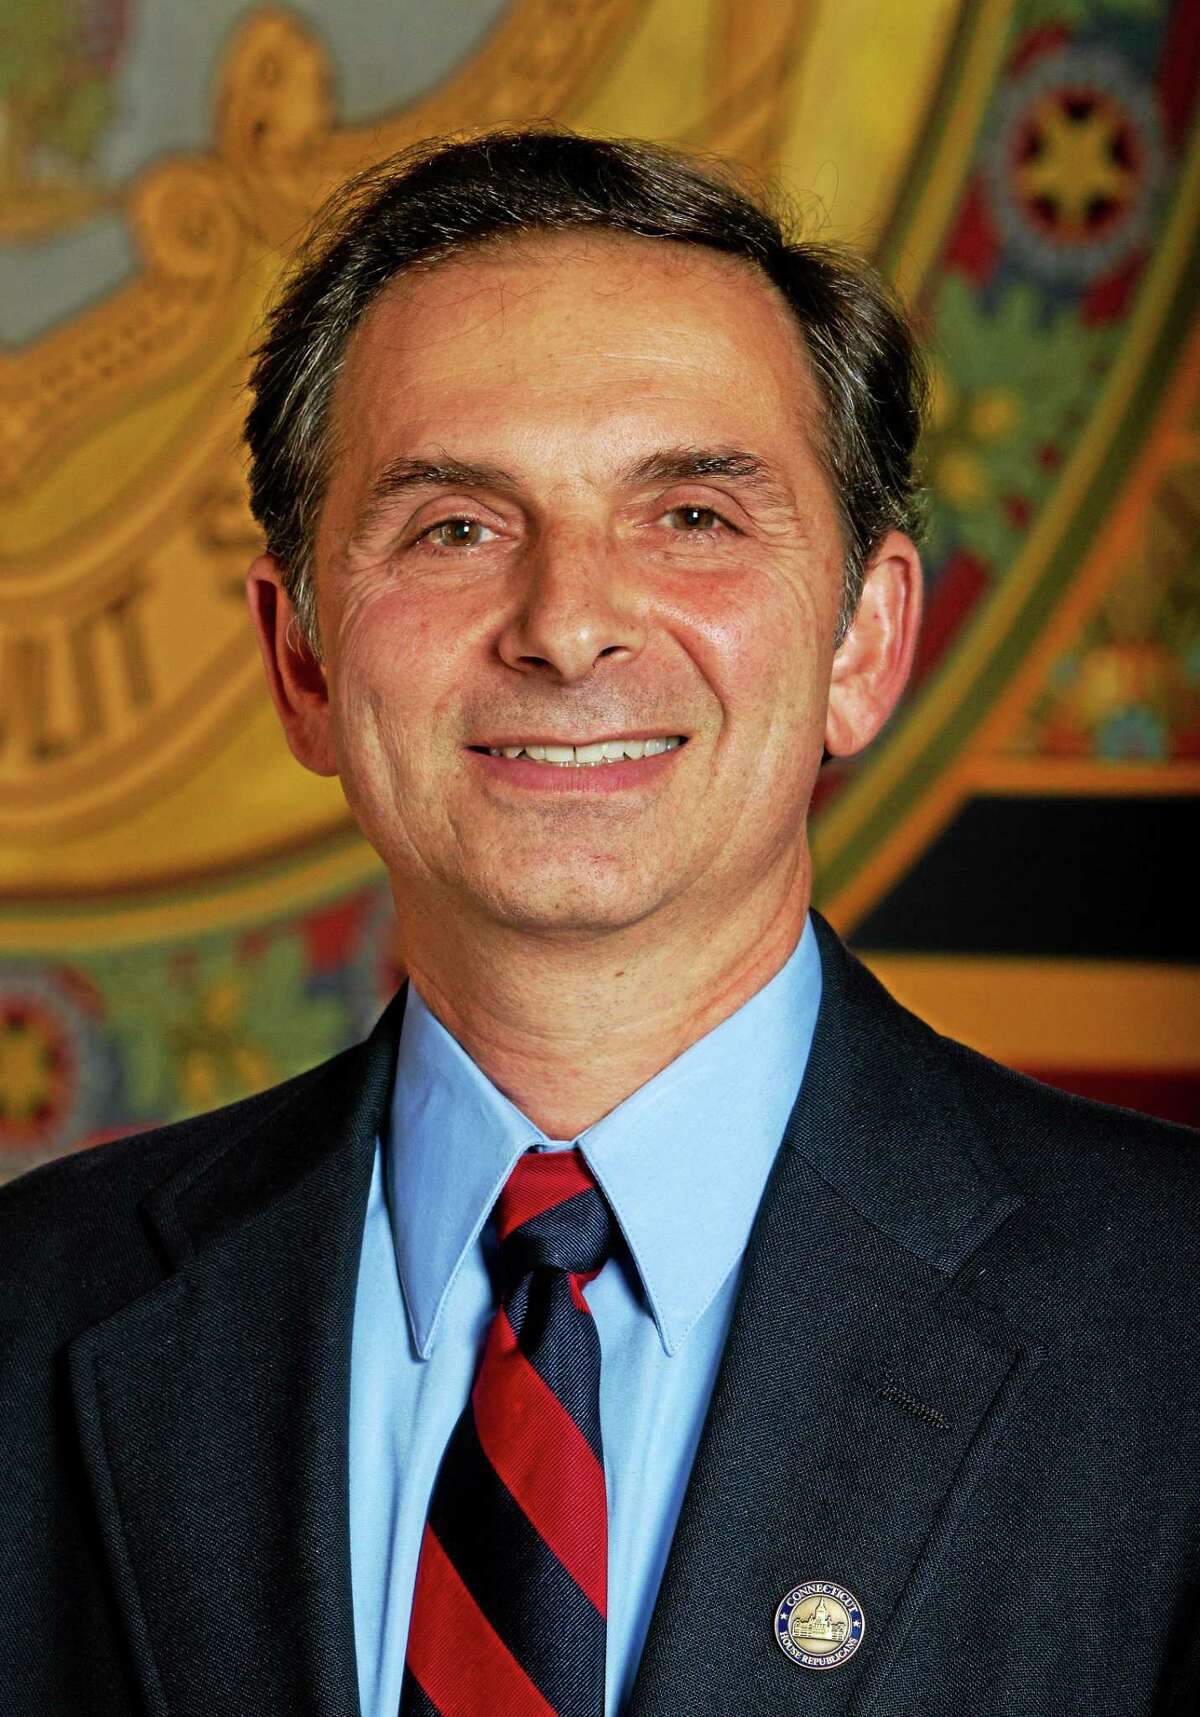 State Rep. Dave Yaccarino